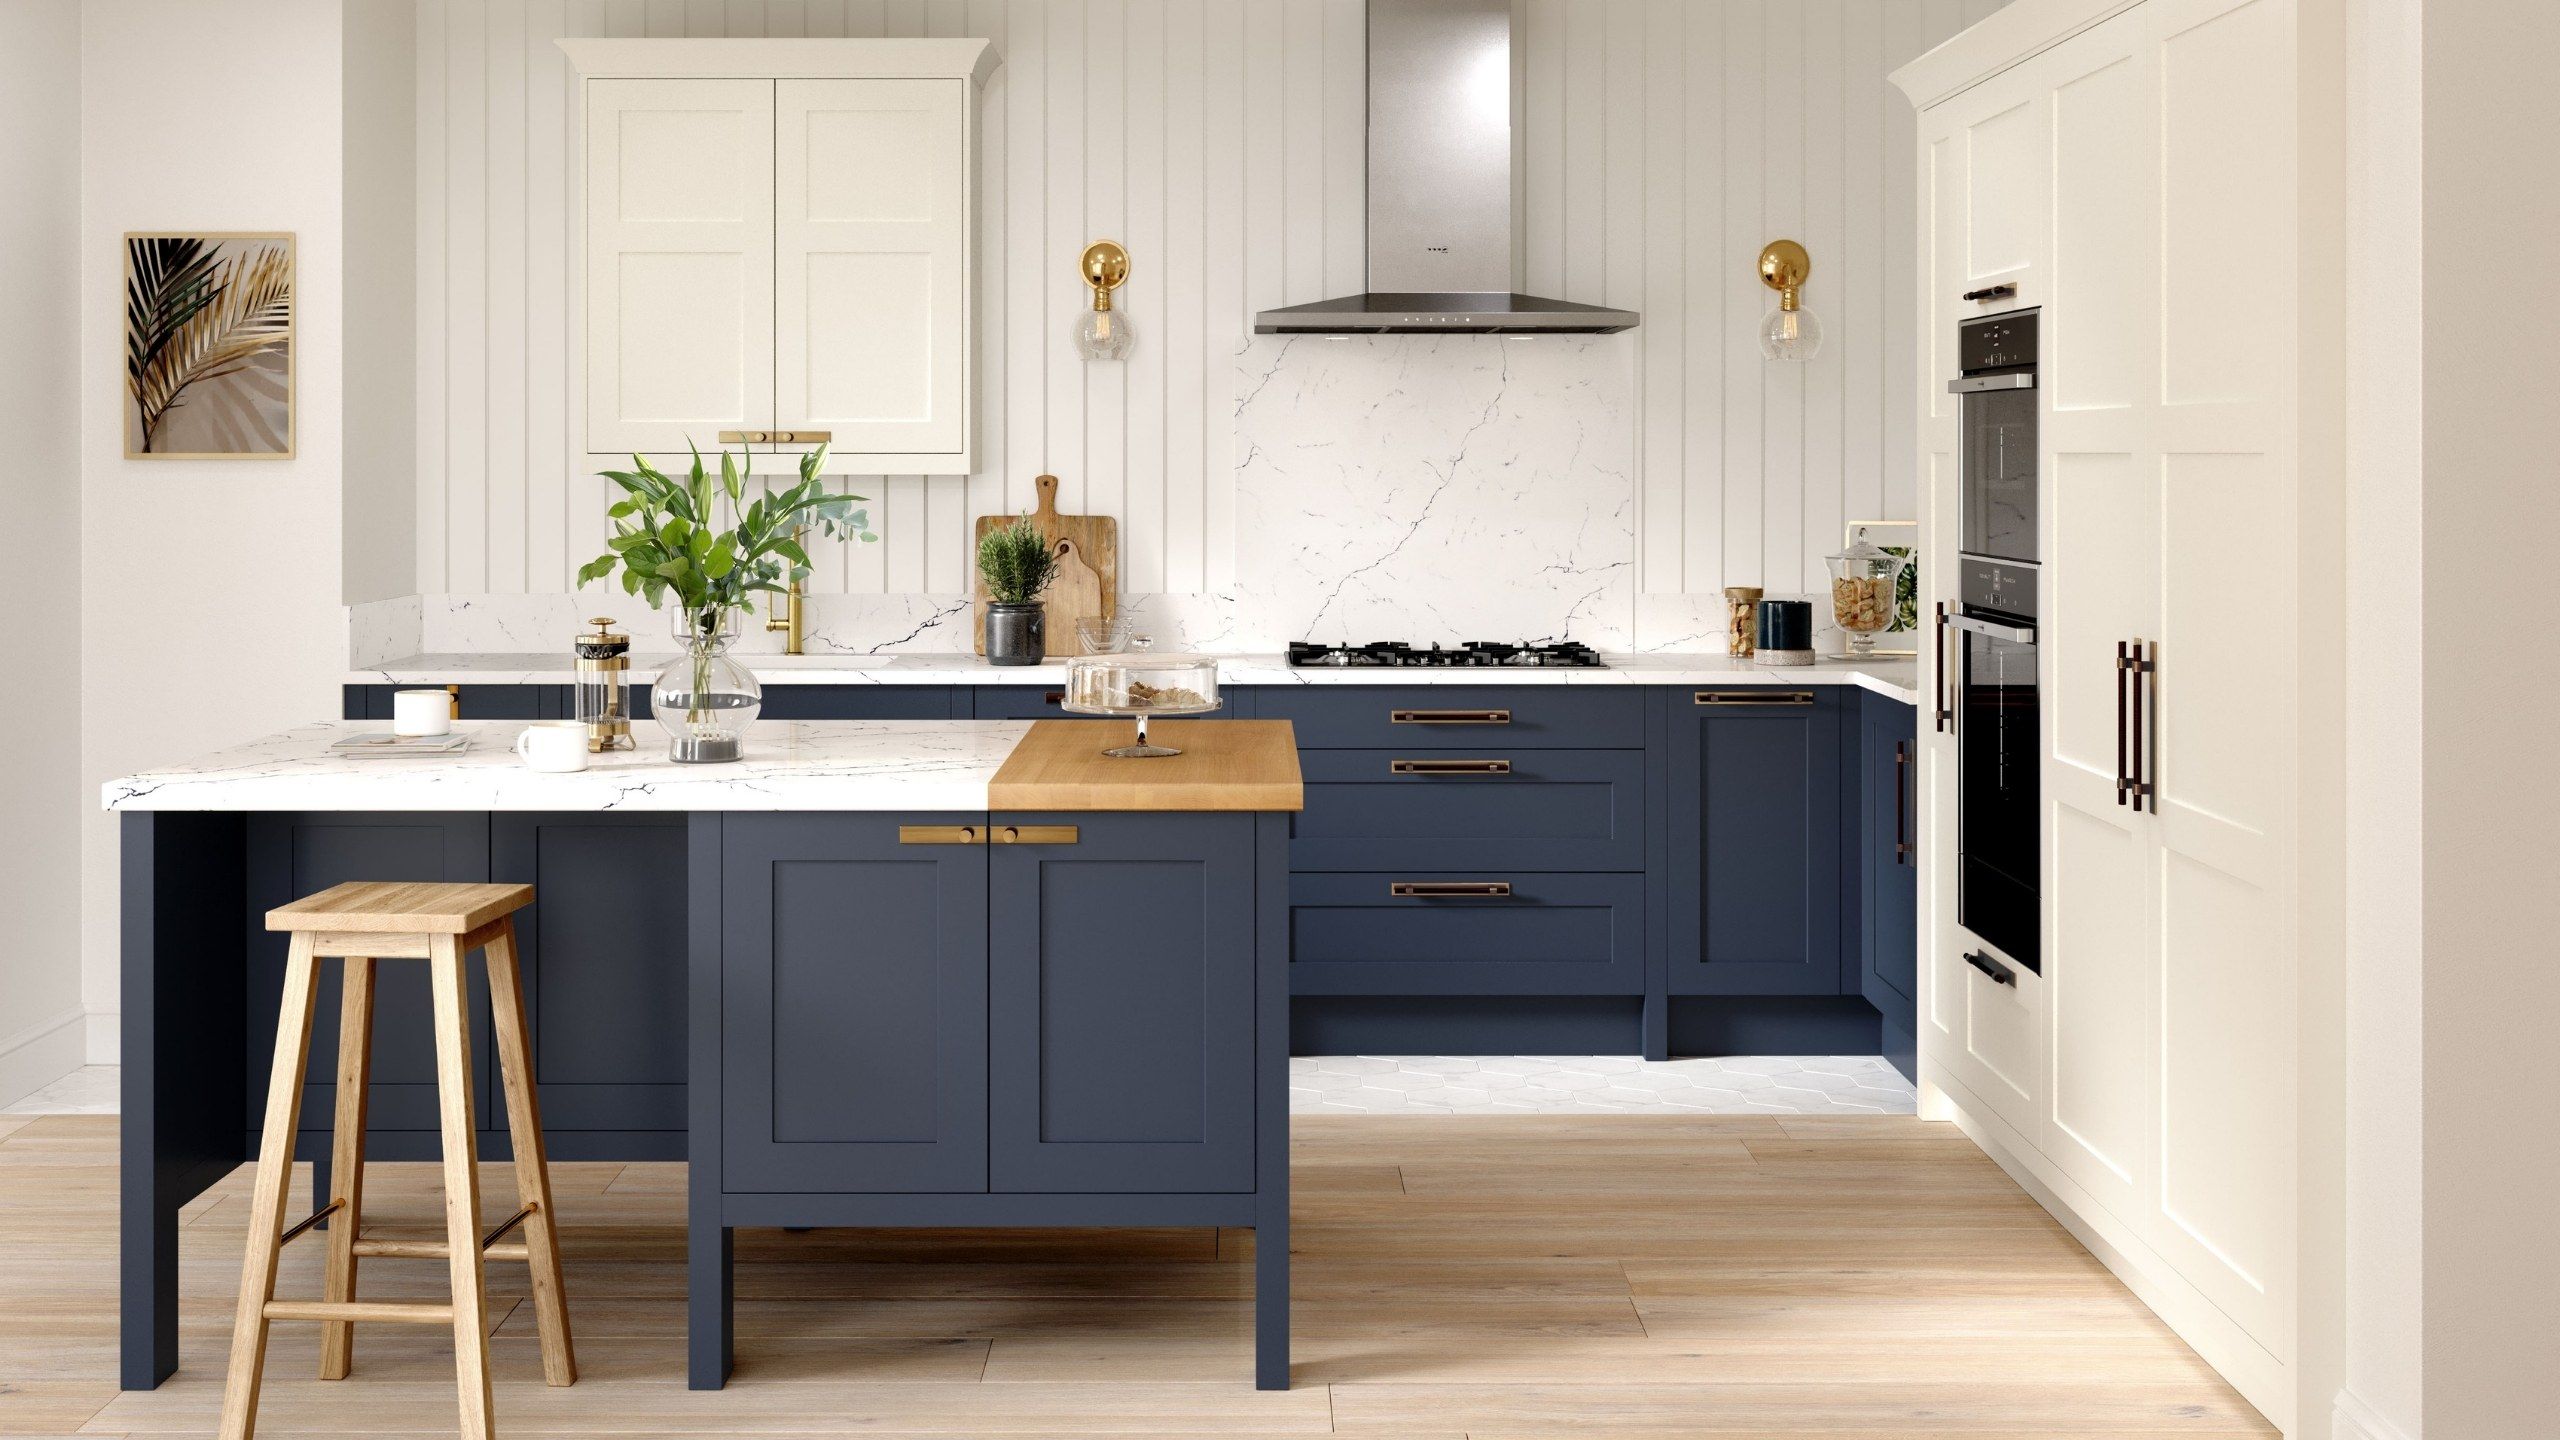 Hunton Modern Shaker Kitchen Design shown in Hartforth Blue